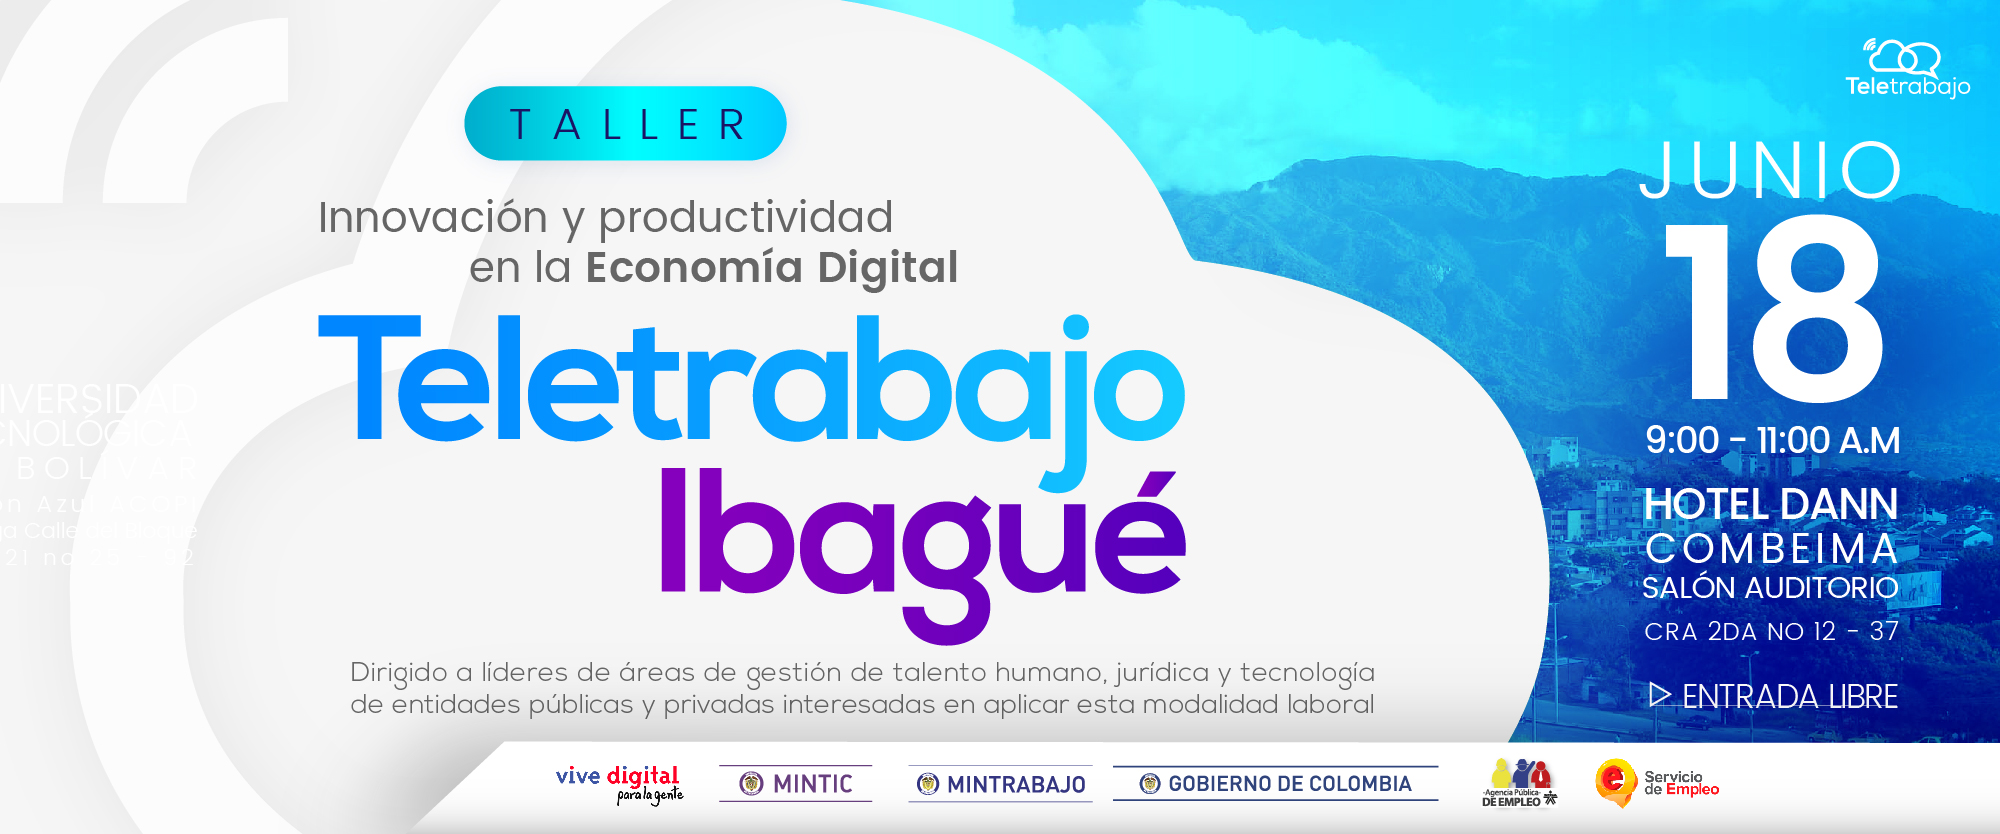 Empresas de Ibagué tendrán taller gratuito sobre Teletrabajo